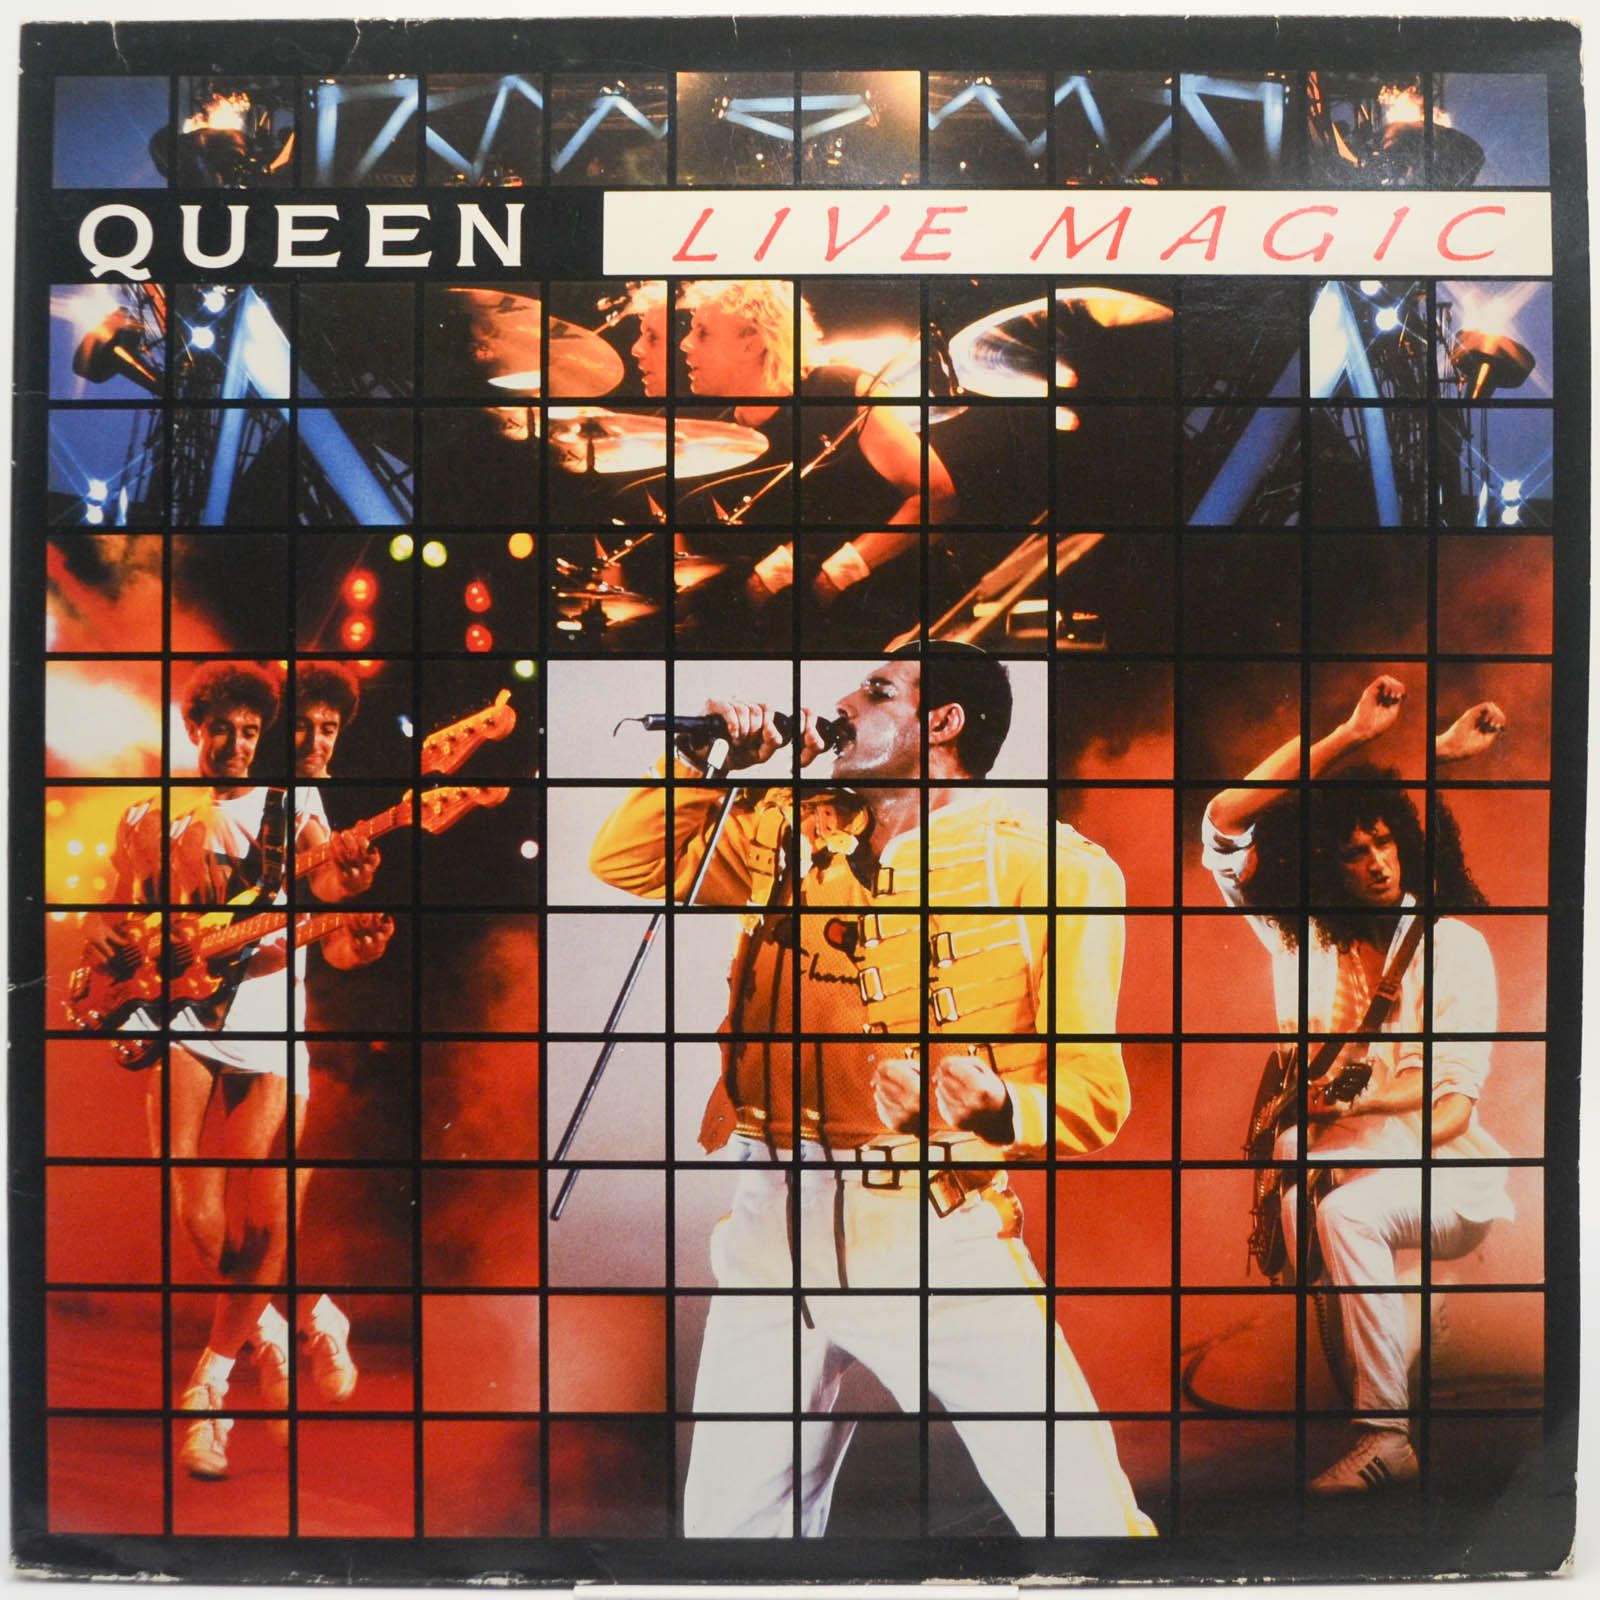 Queen — Live Magic (UK), 1986